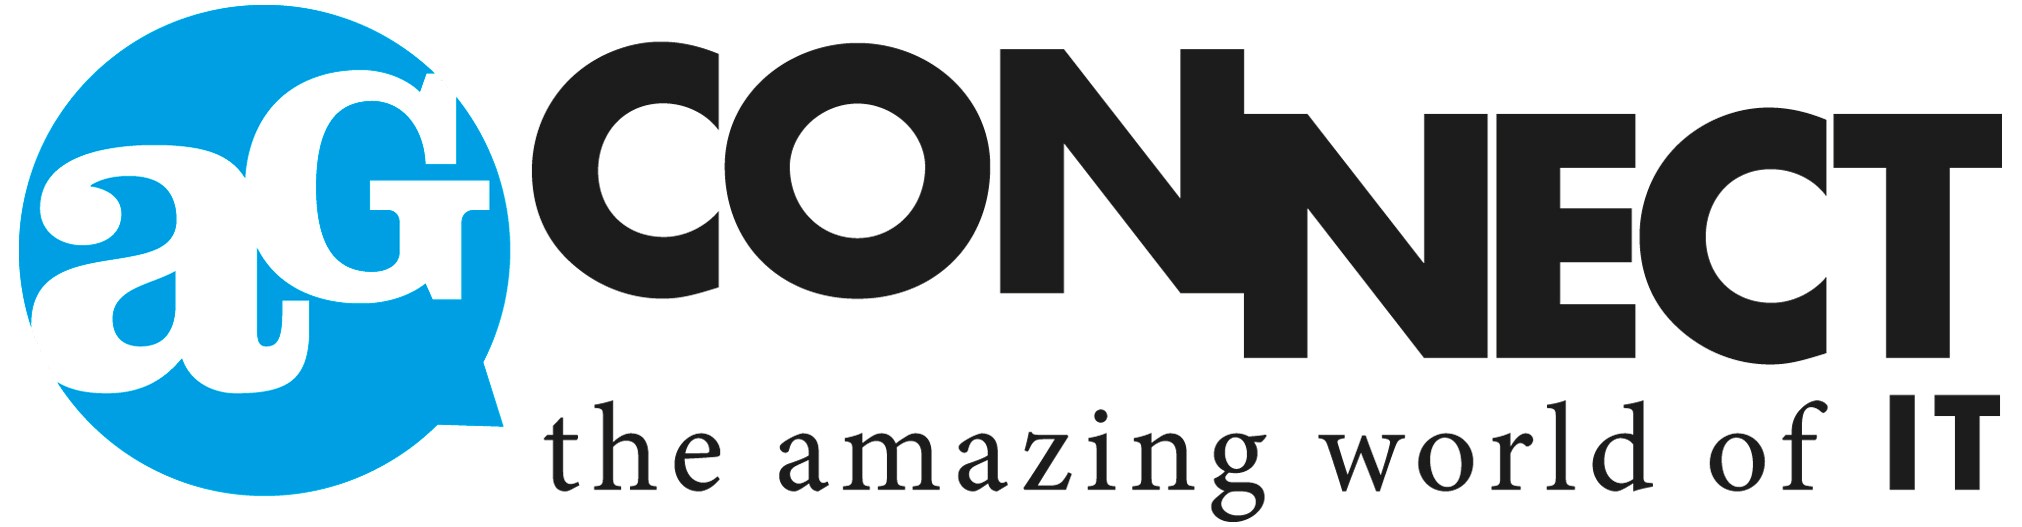 agconnect-logo